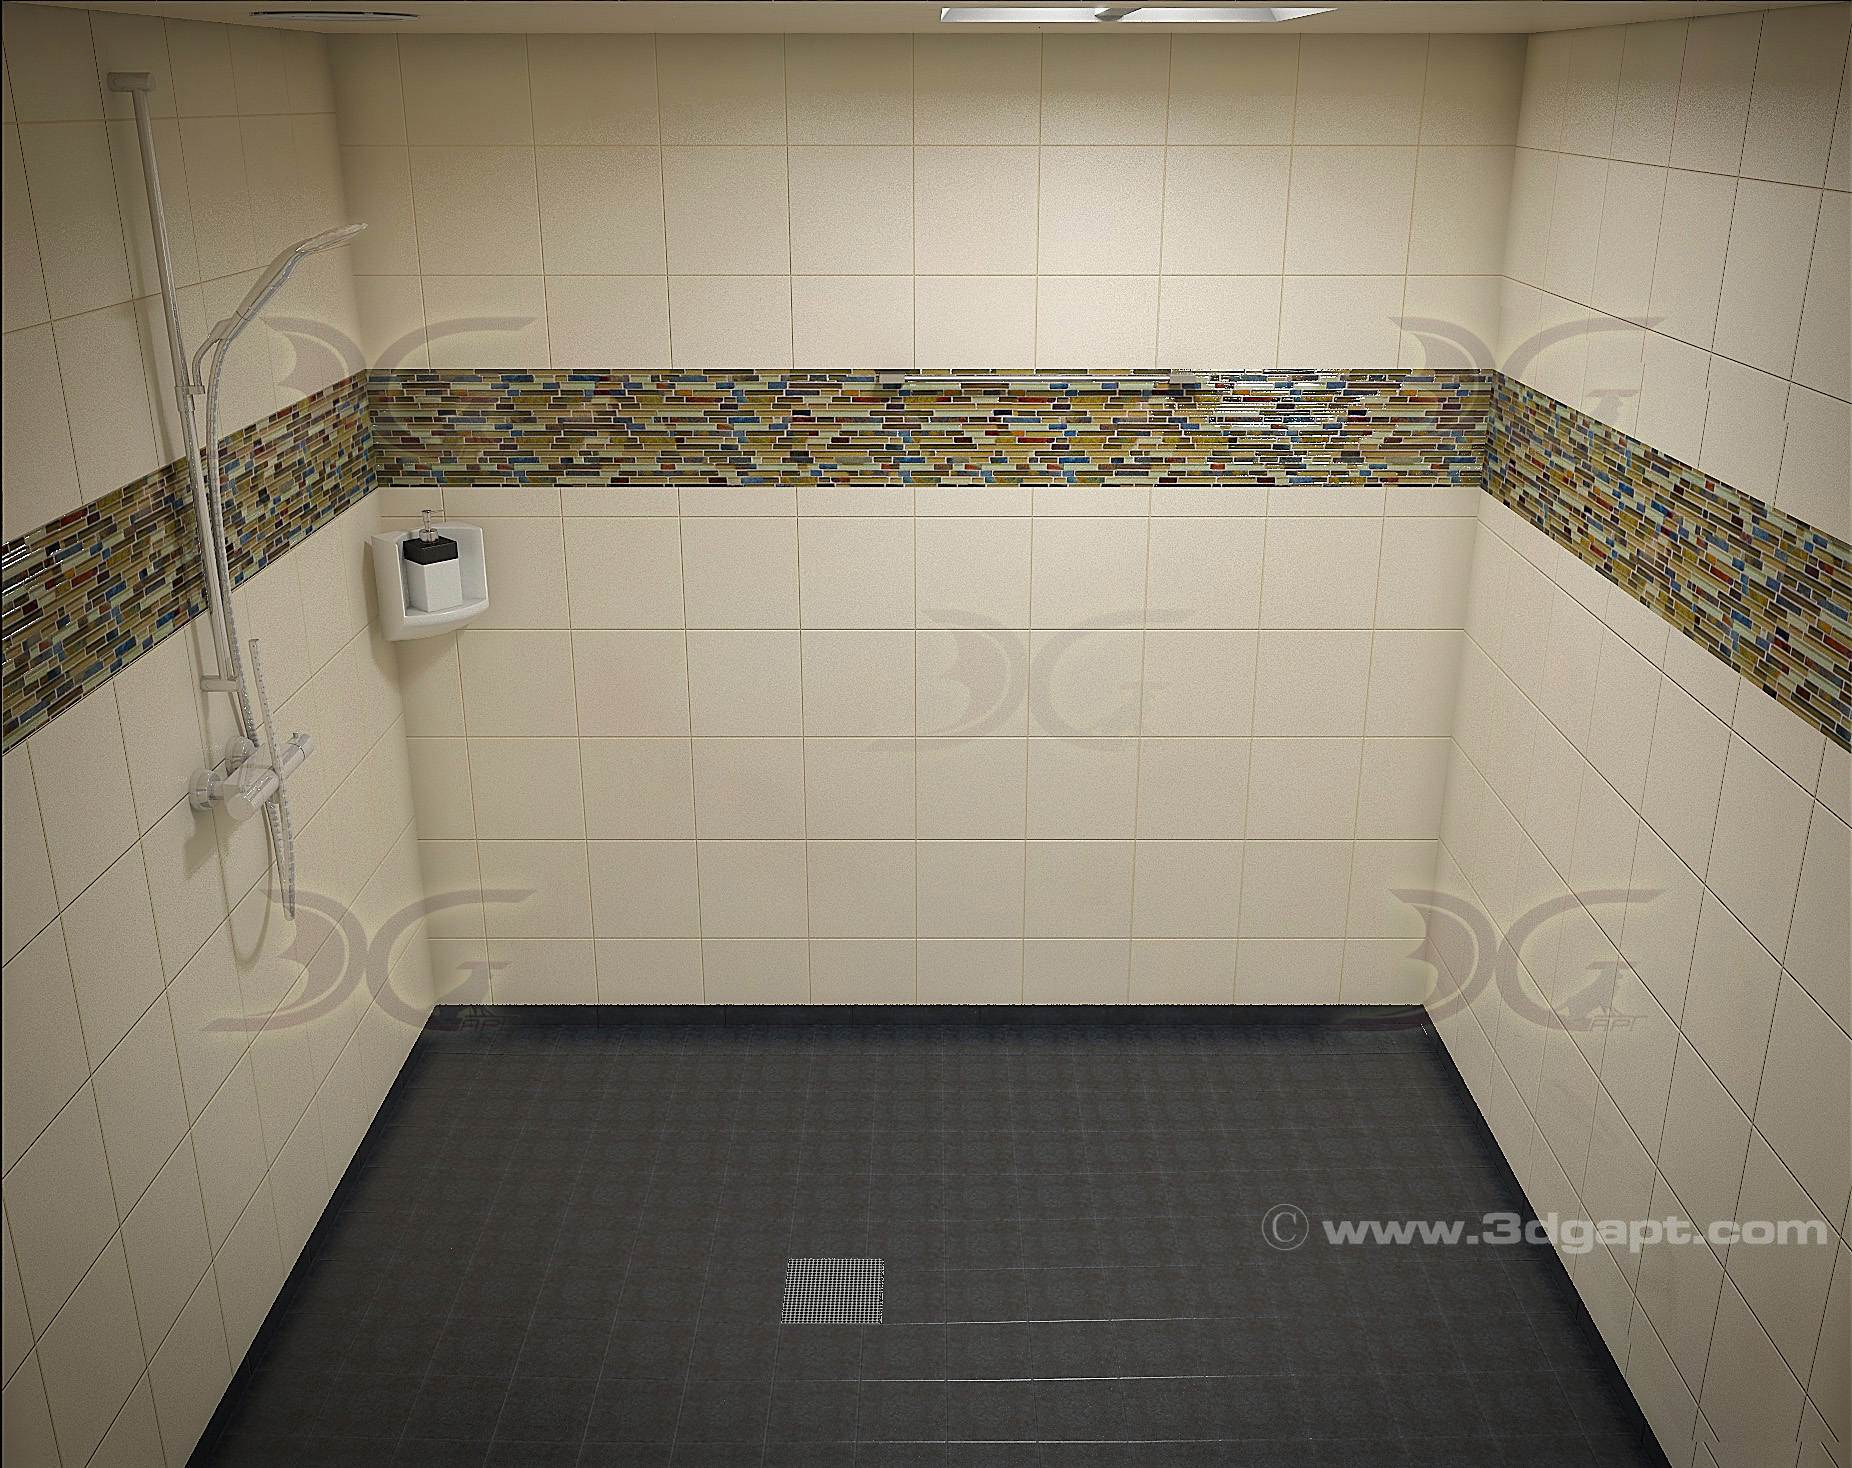 architecture interior container bathrooms0008